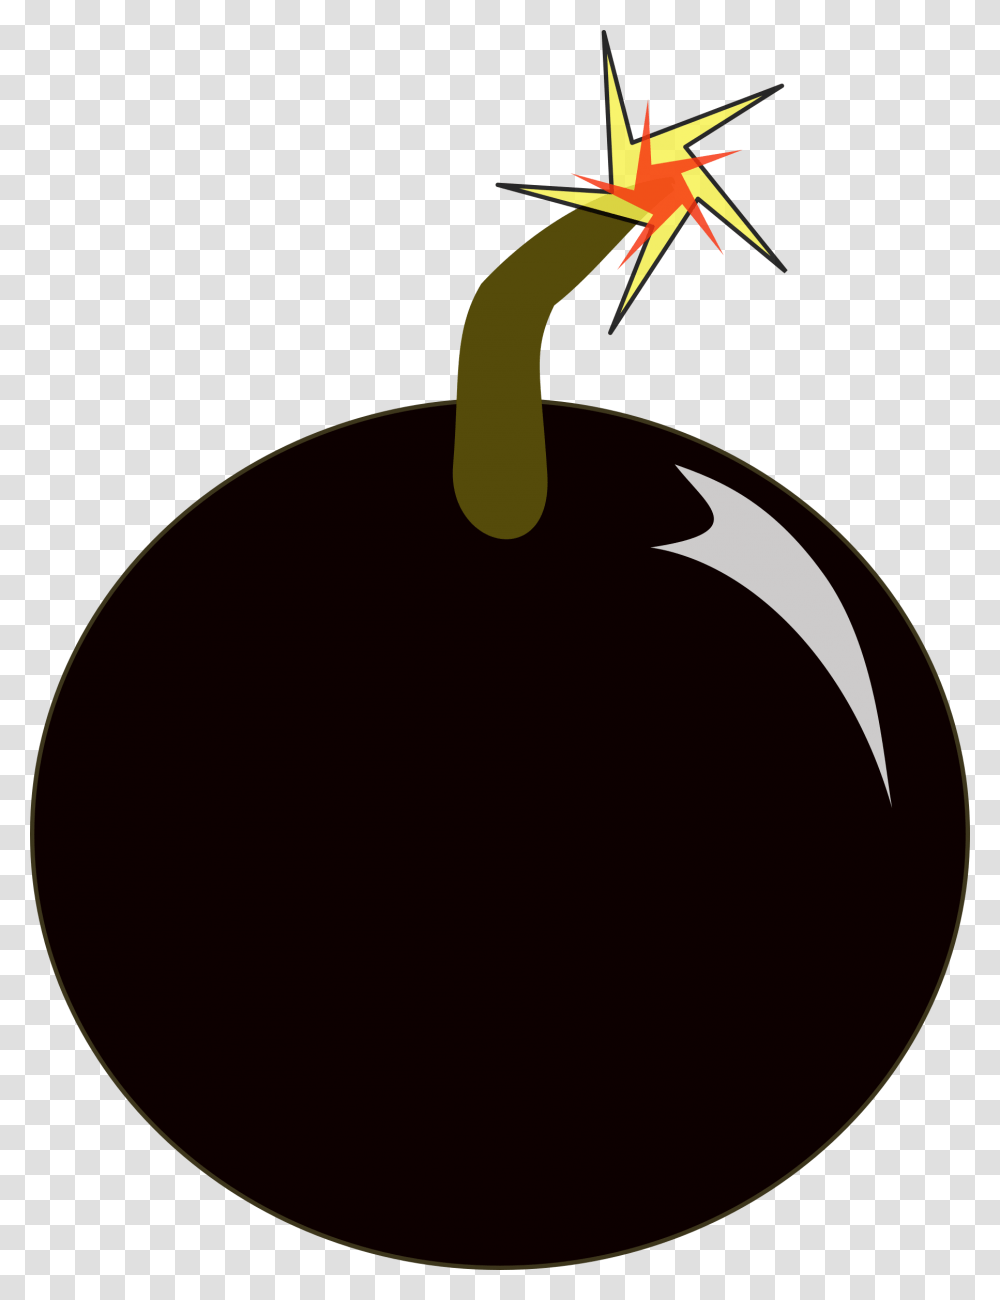 Bomb, Weapon, Plant, Fruit, Food Transparent Png